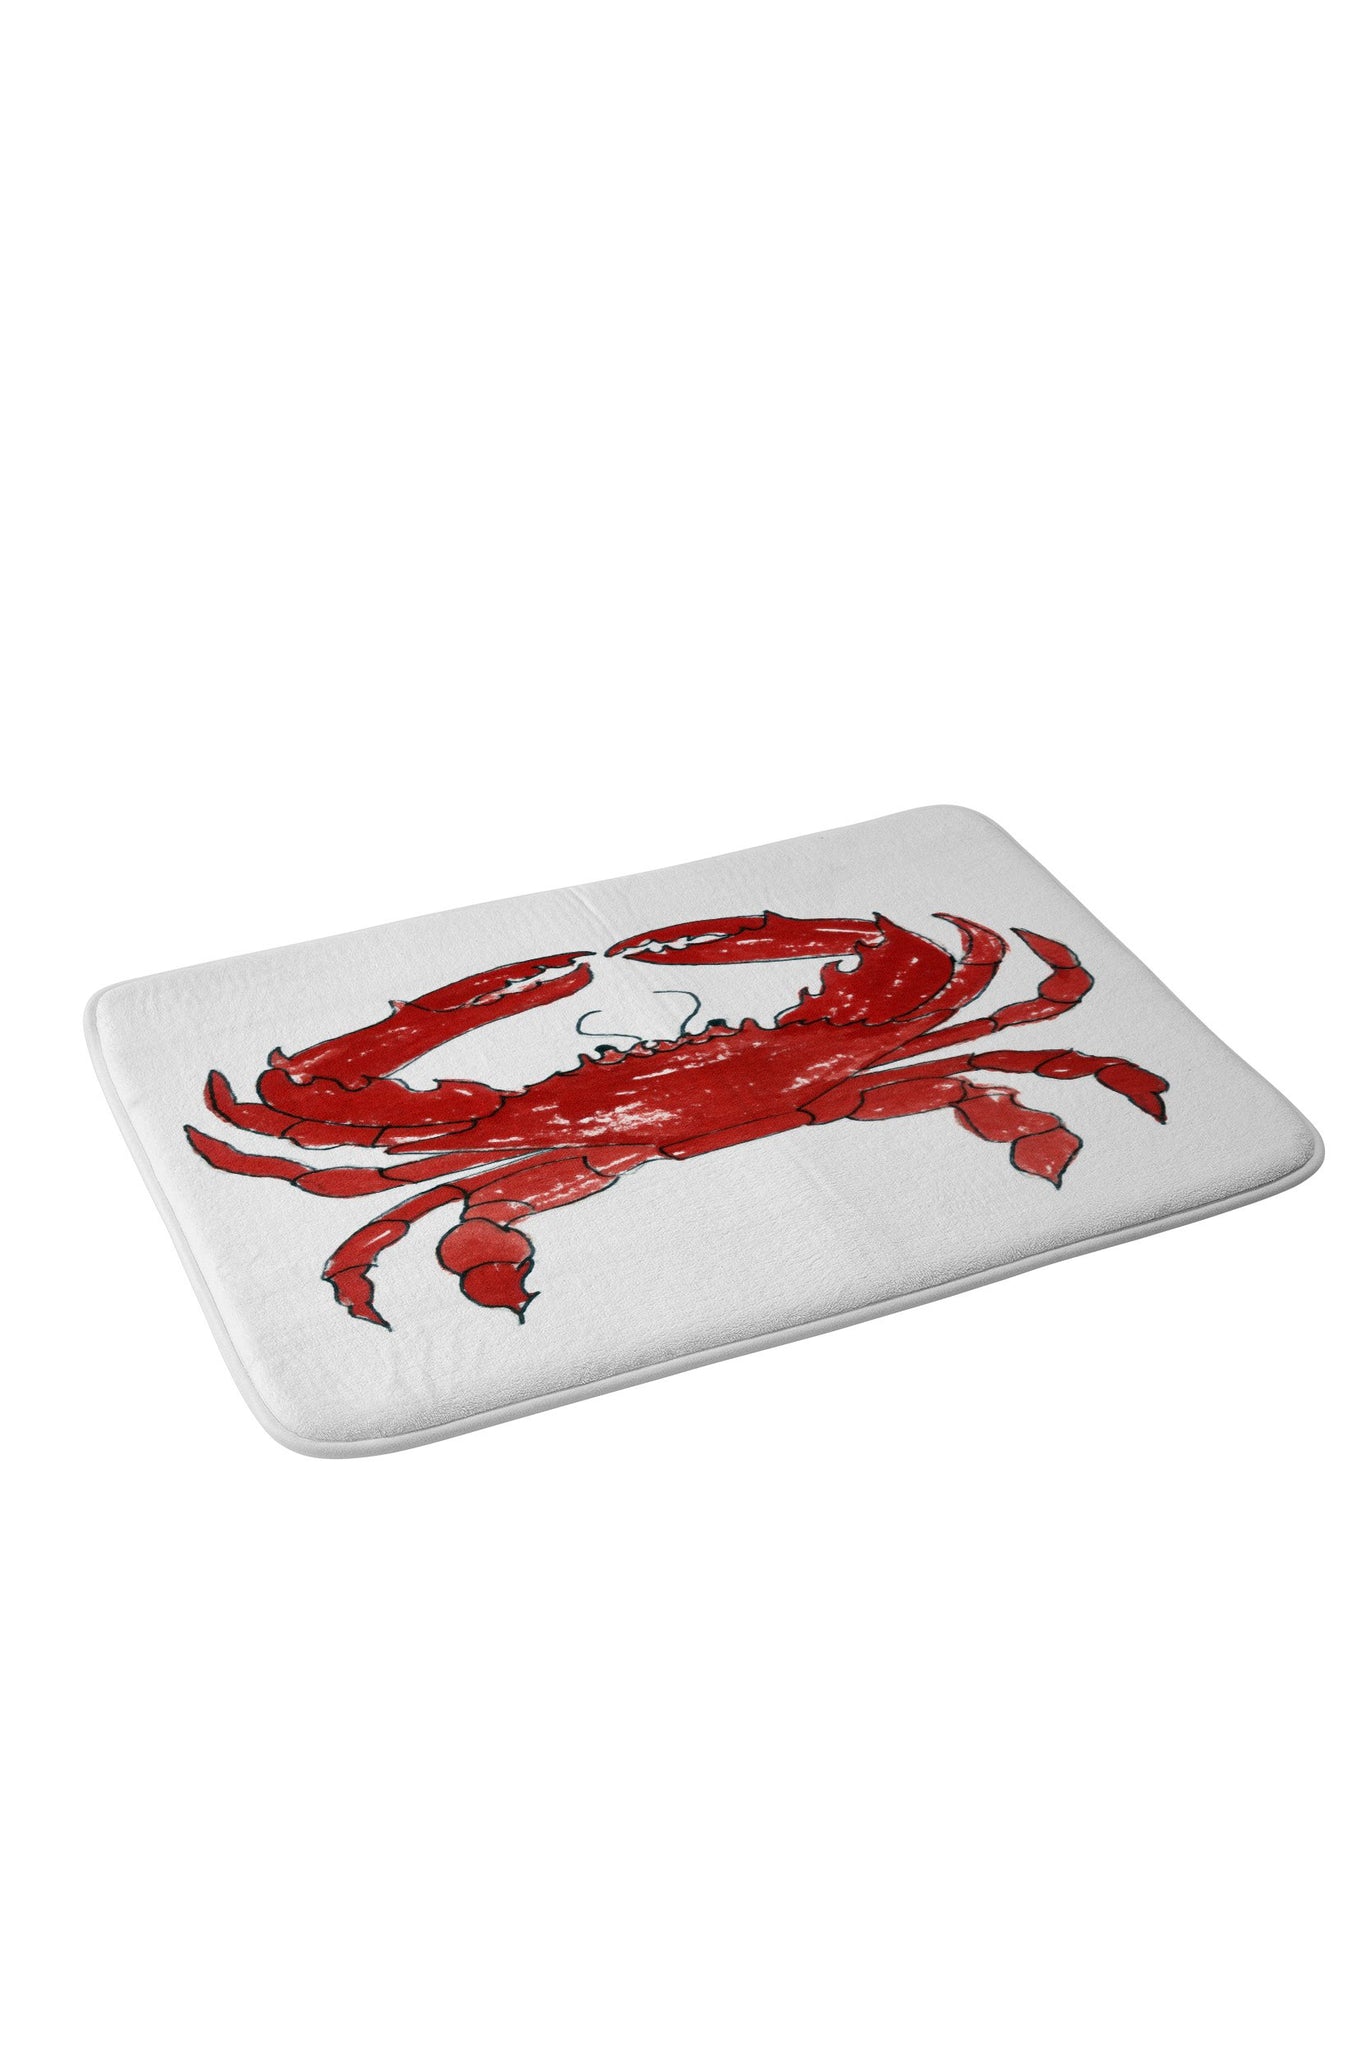 Red Crab Memory Foam Bath Mat